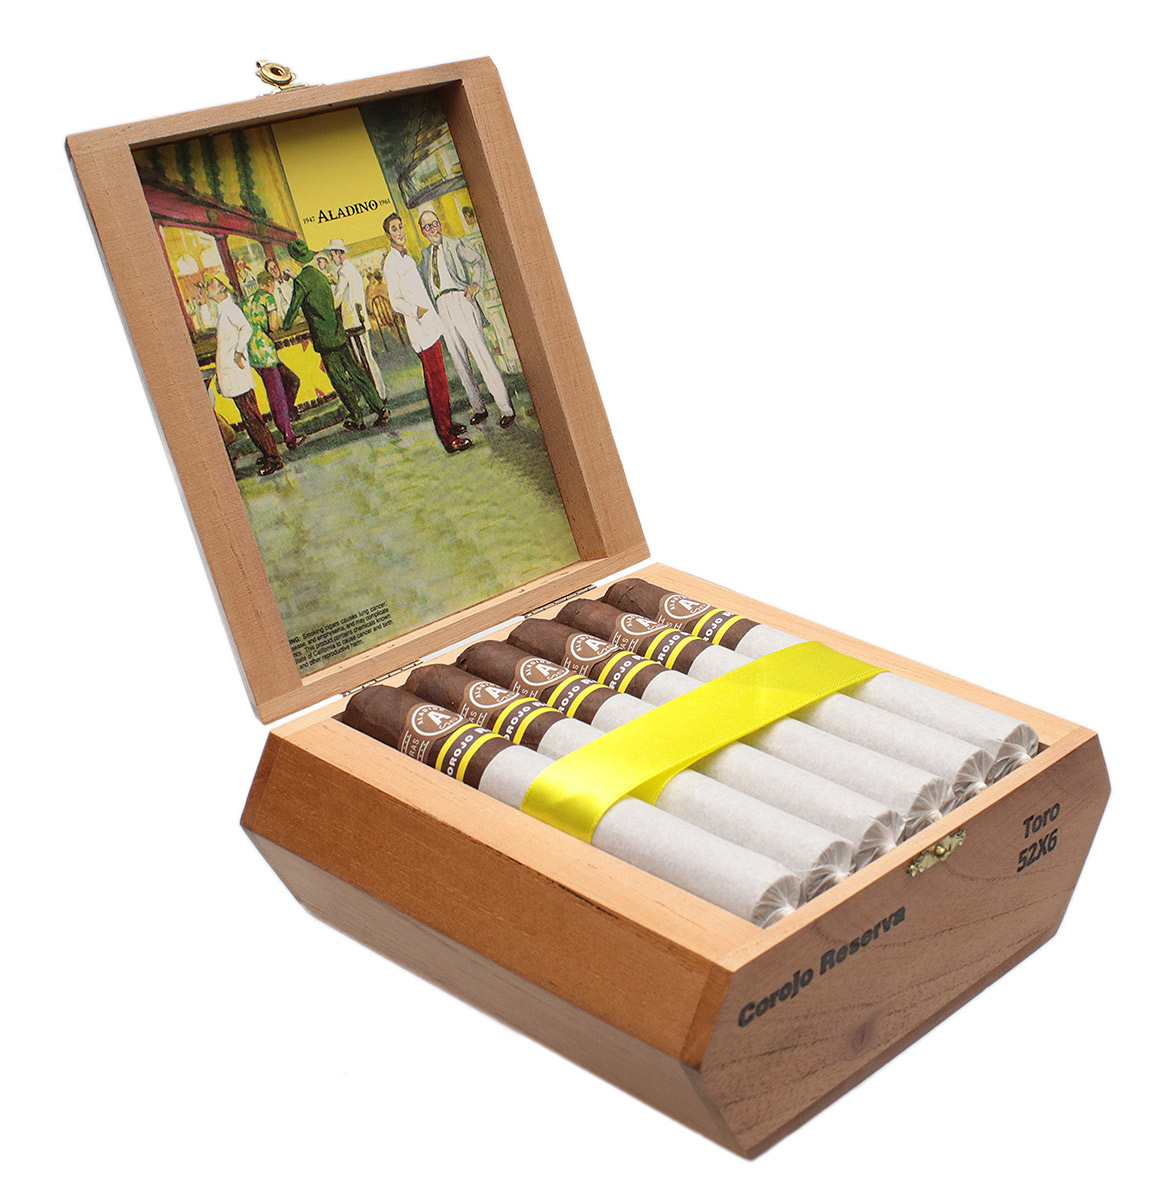 Aladino Corojo Reserva Cigars